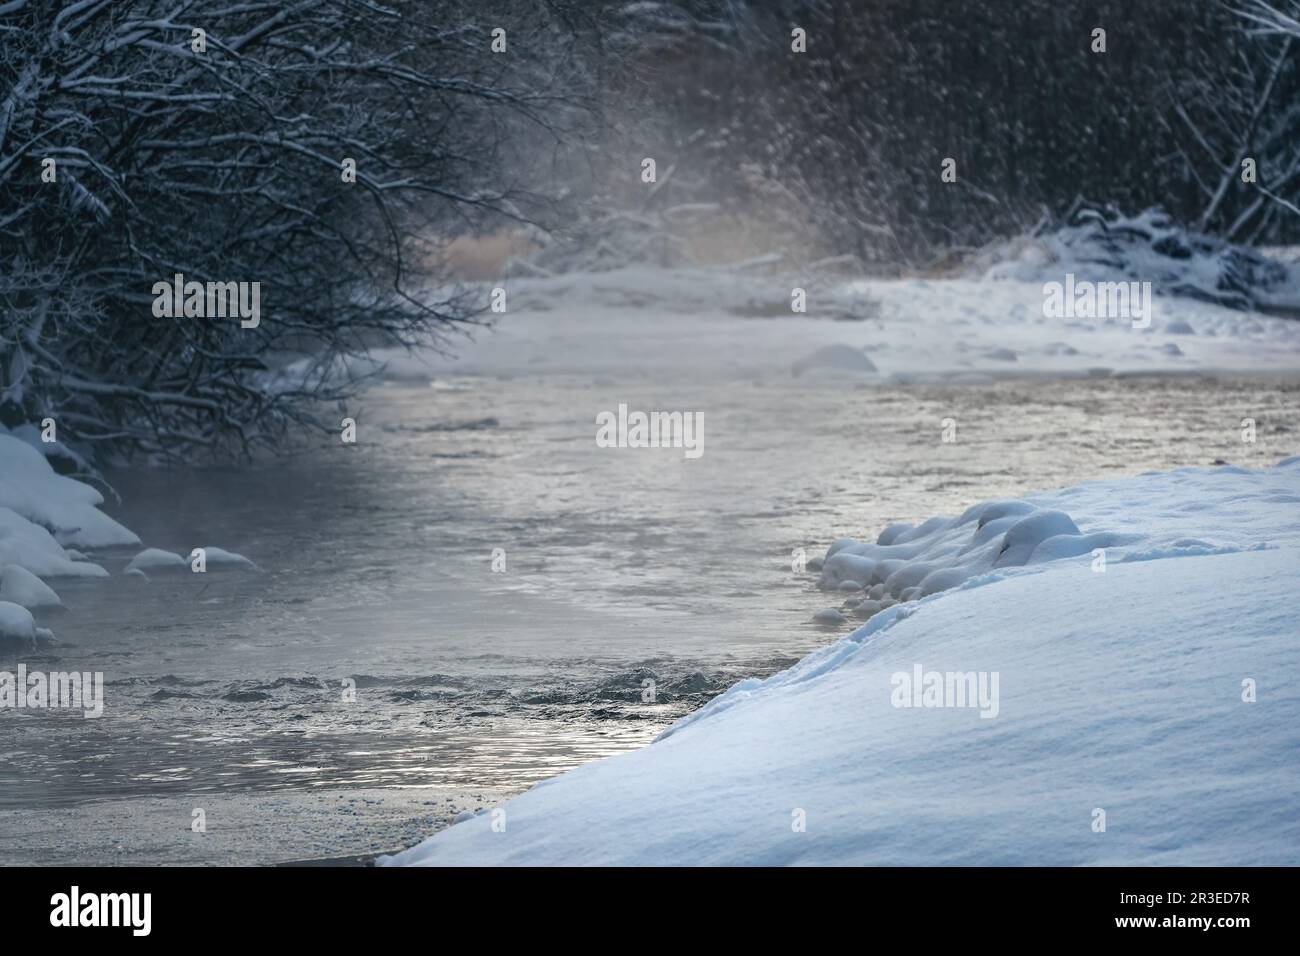 Kalter Winterfluss, Dampf über Wasser sichtbar, dunkle Bäume auf beiden Seiten Stockfoto